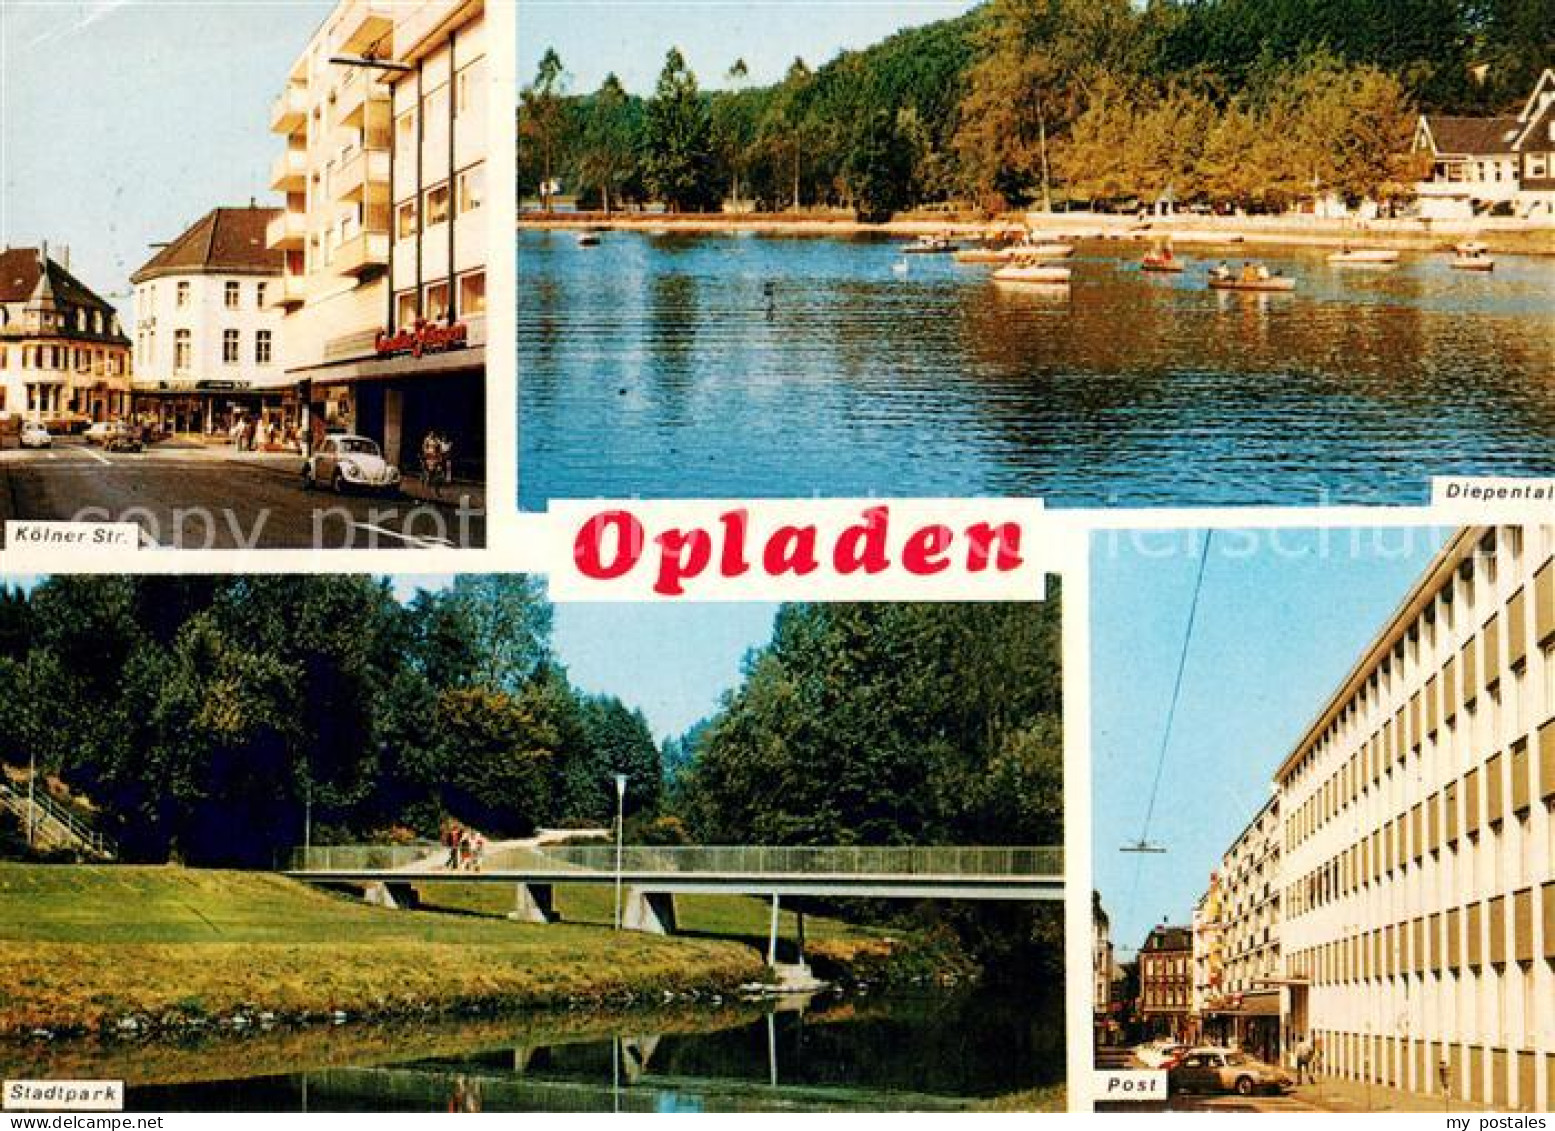 73670554 Opladen Koelner Strasse Diepentalsperre Stausee Stadtpark Post Opladen - Leverkusen